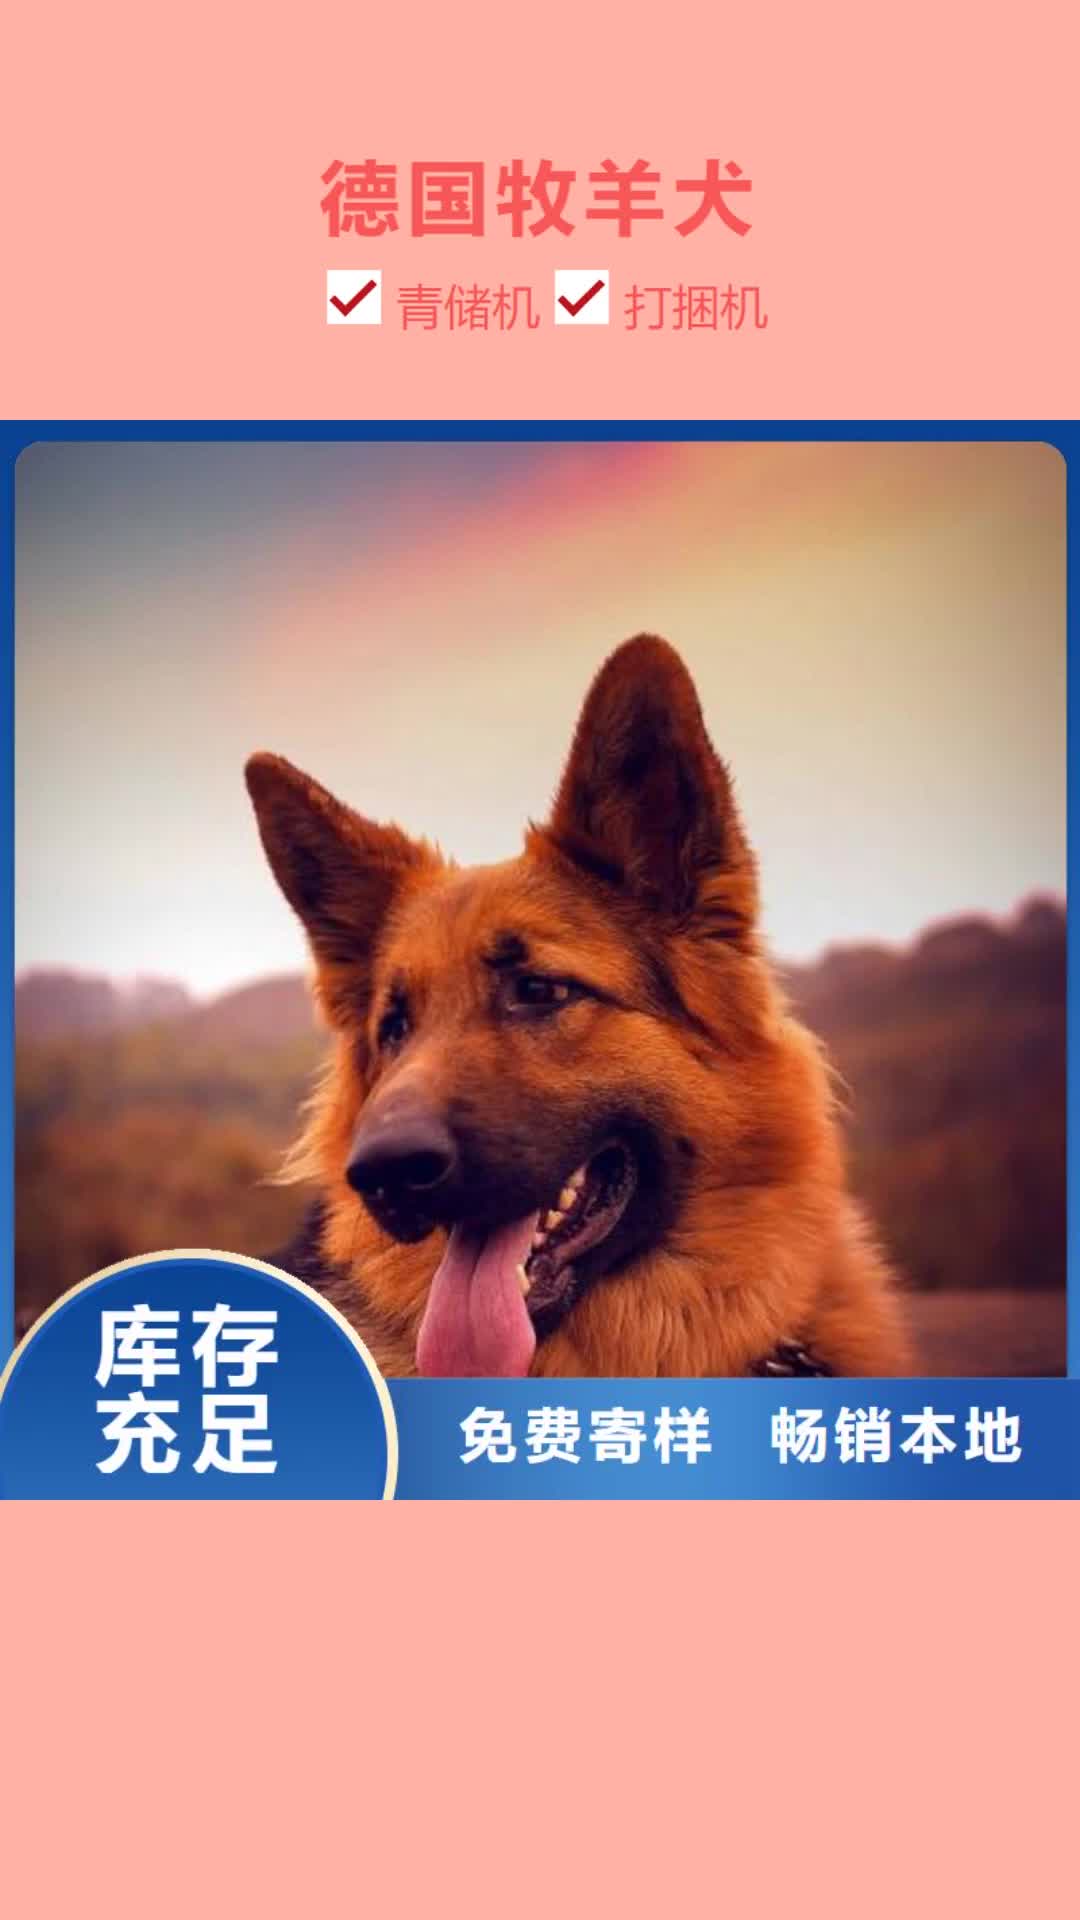 宜春【德国牧羊犬】 马犬客户信赖的厂家